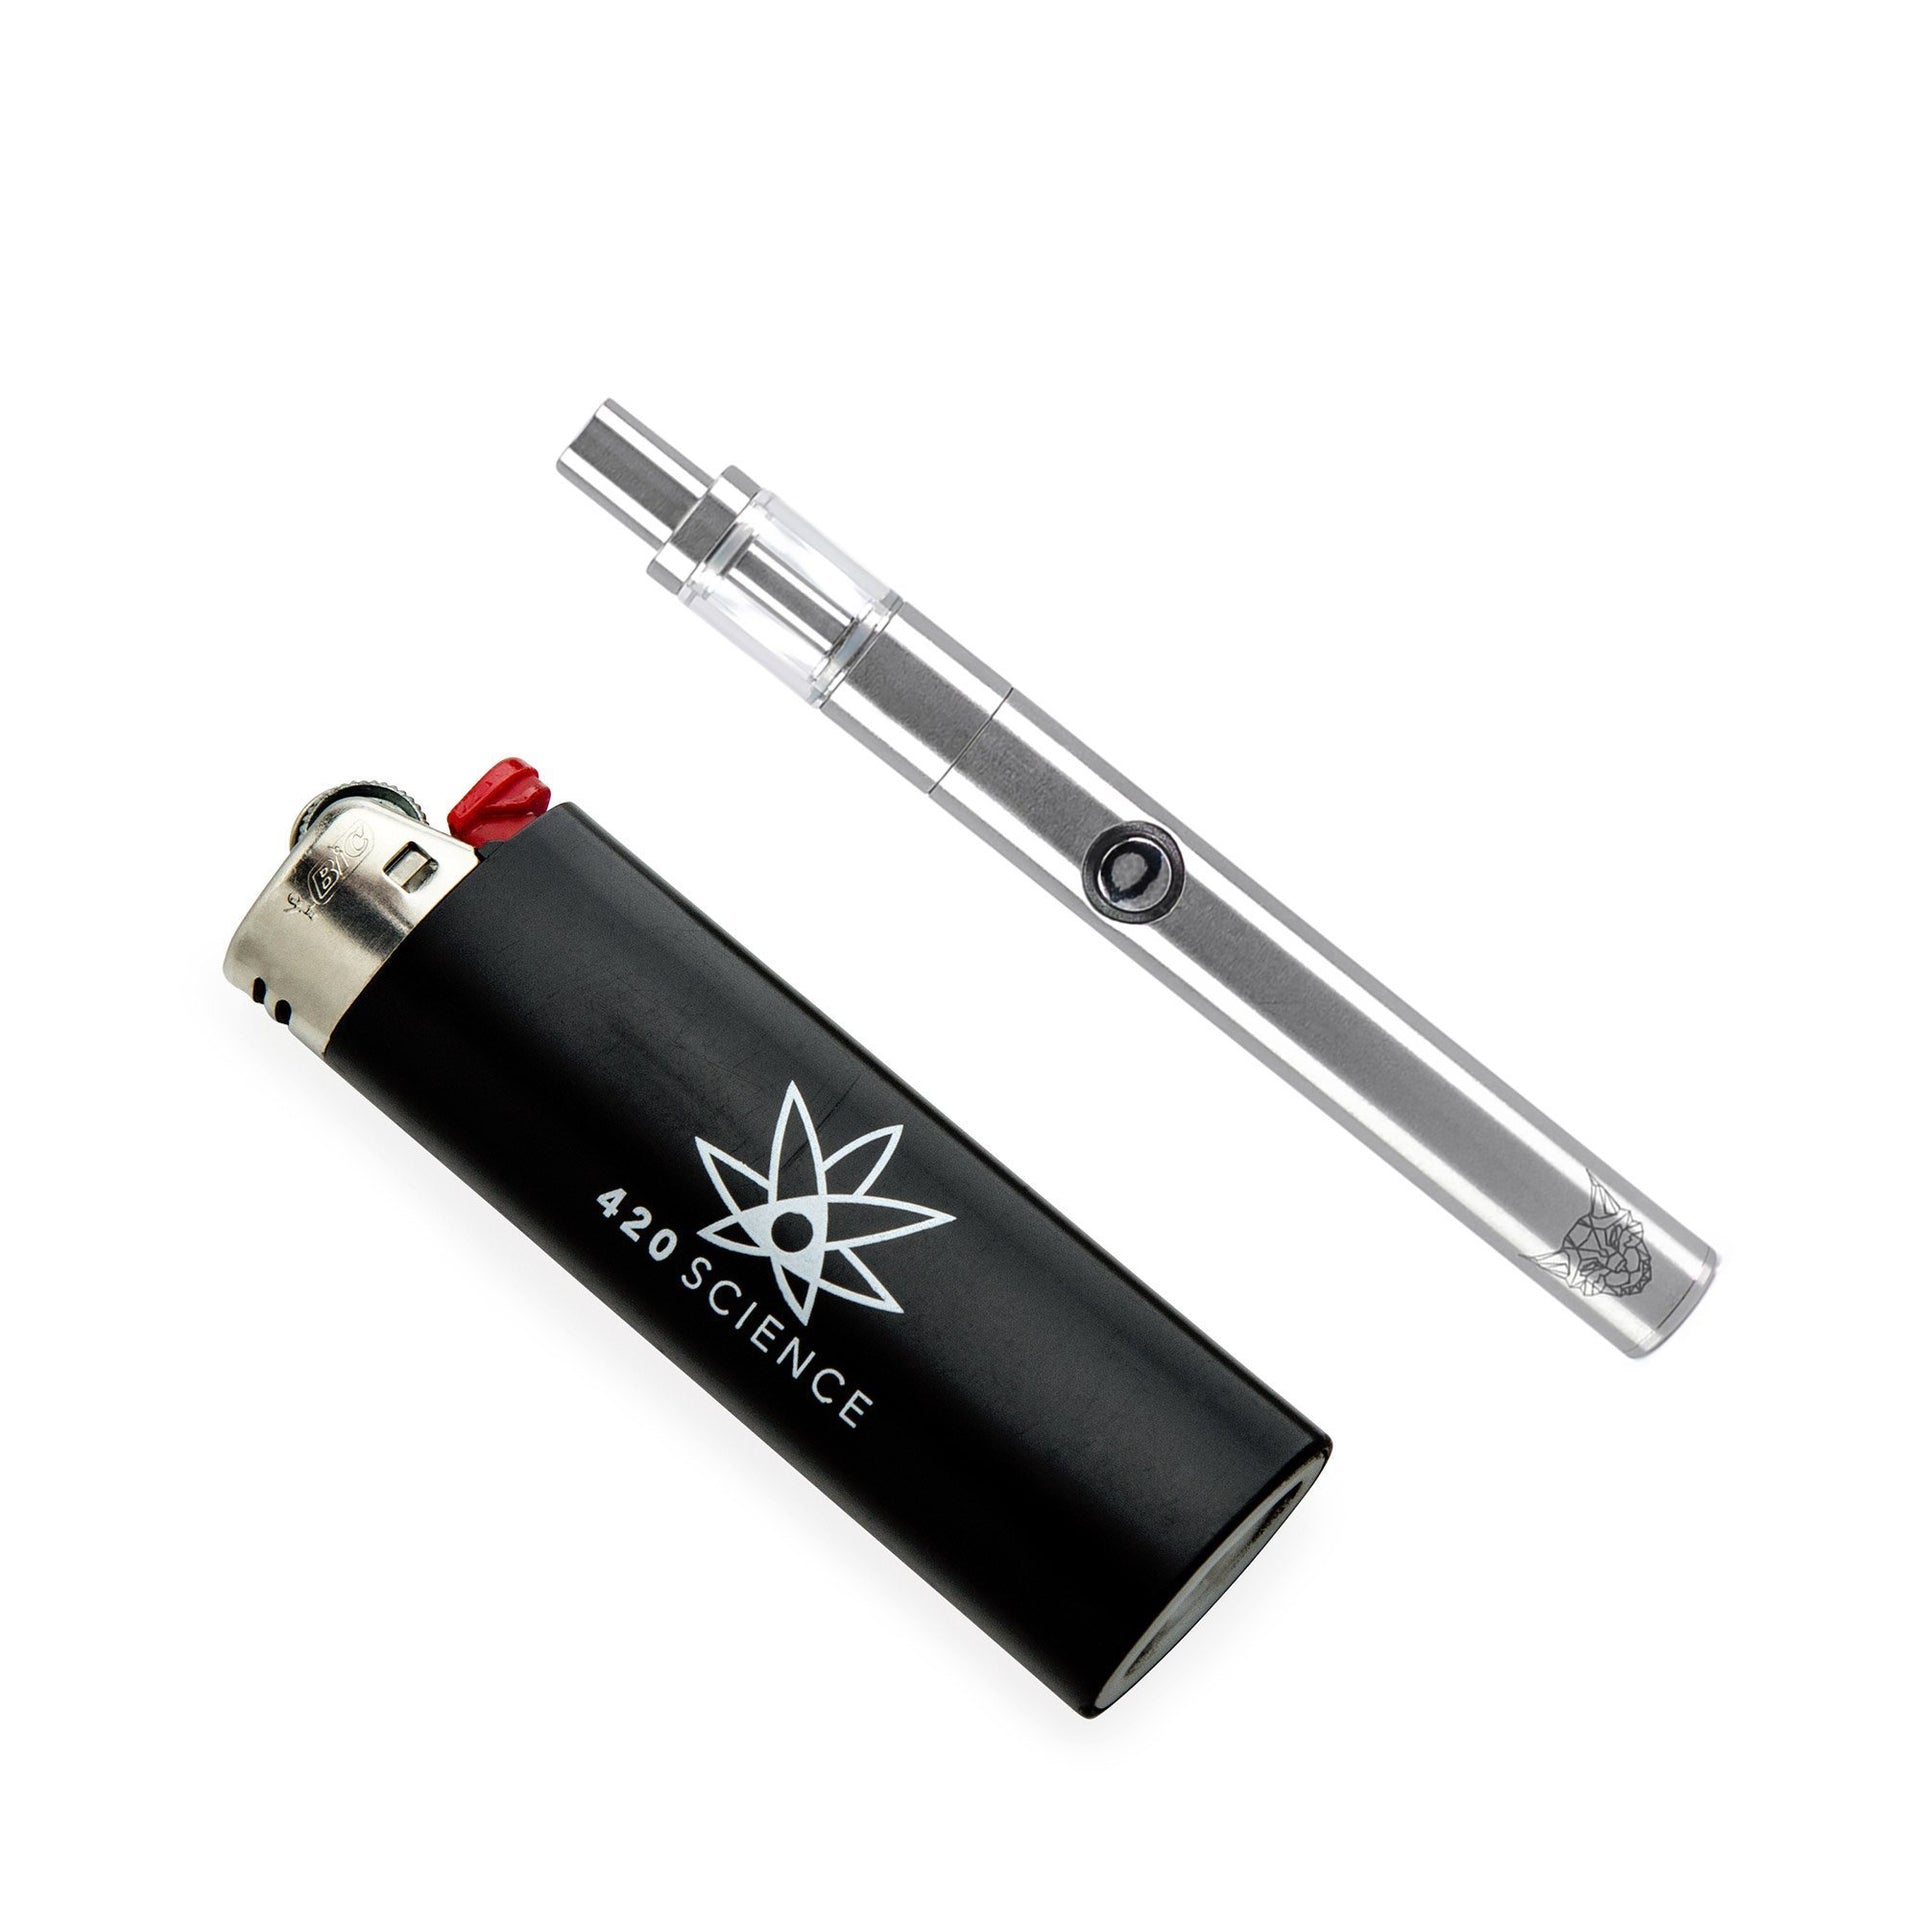 Linx Hermes 3 Oil Pen - 0.5 ml & Refillable